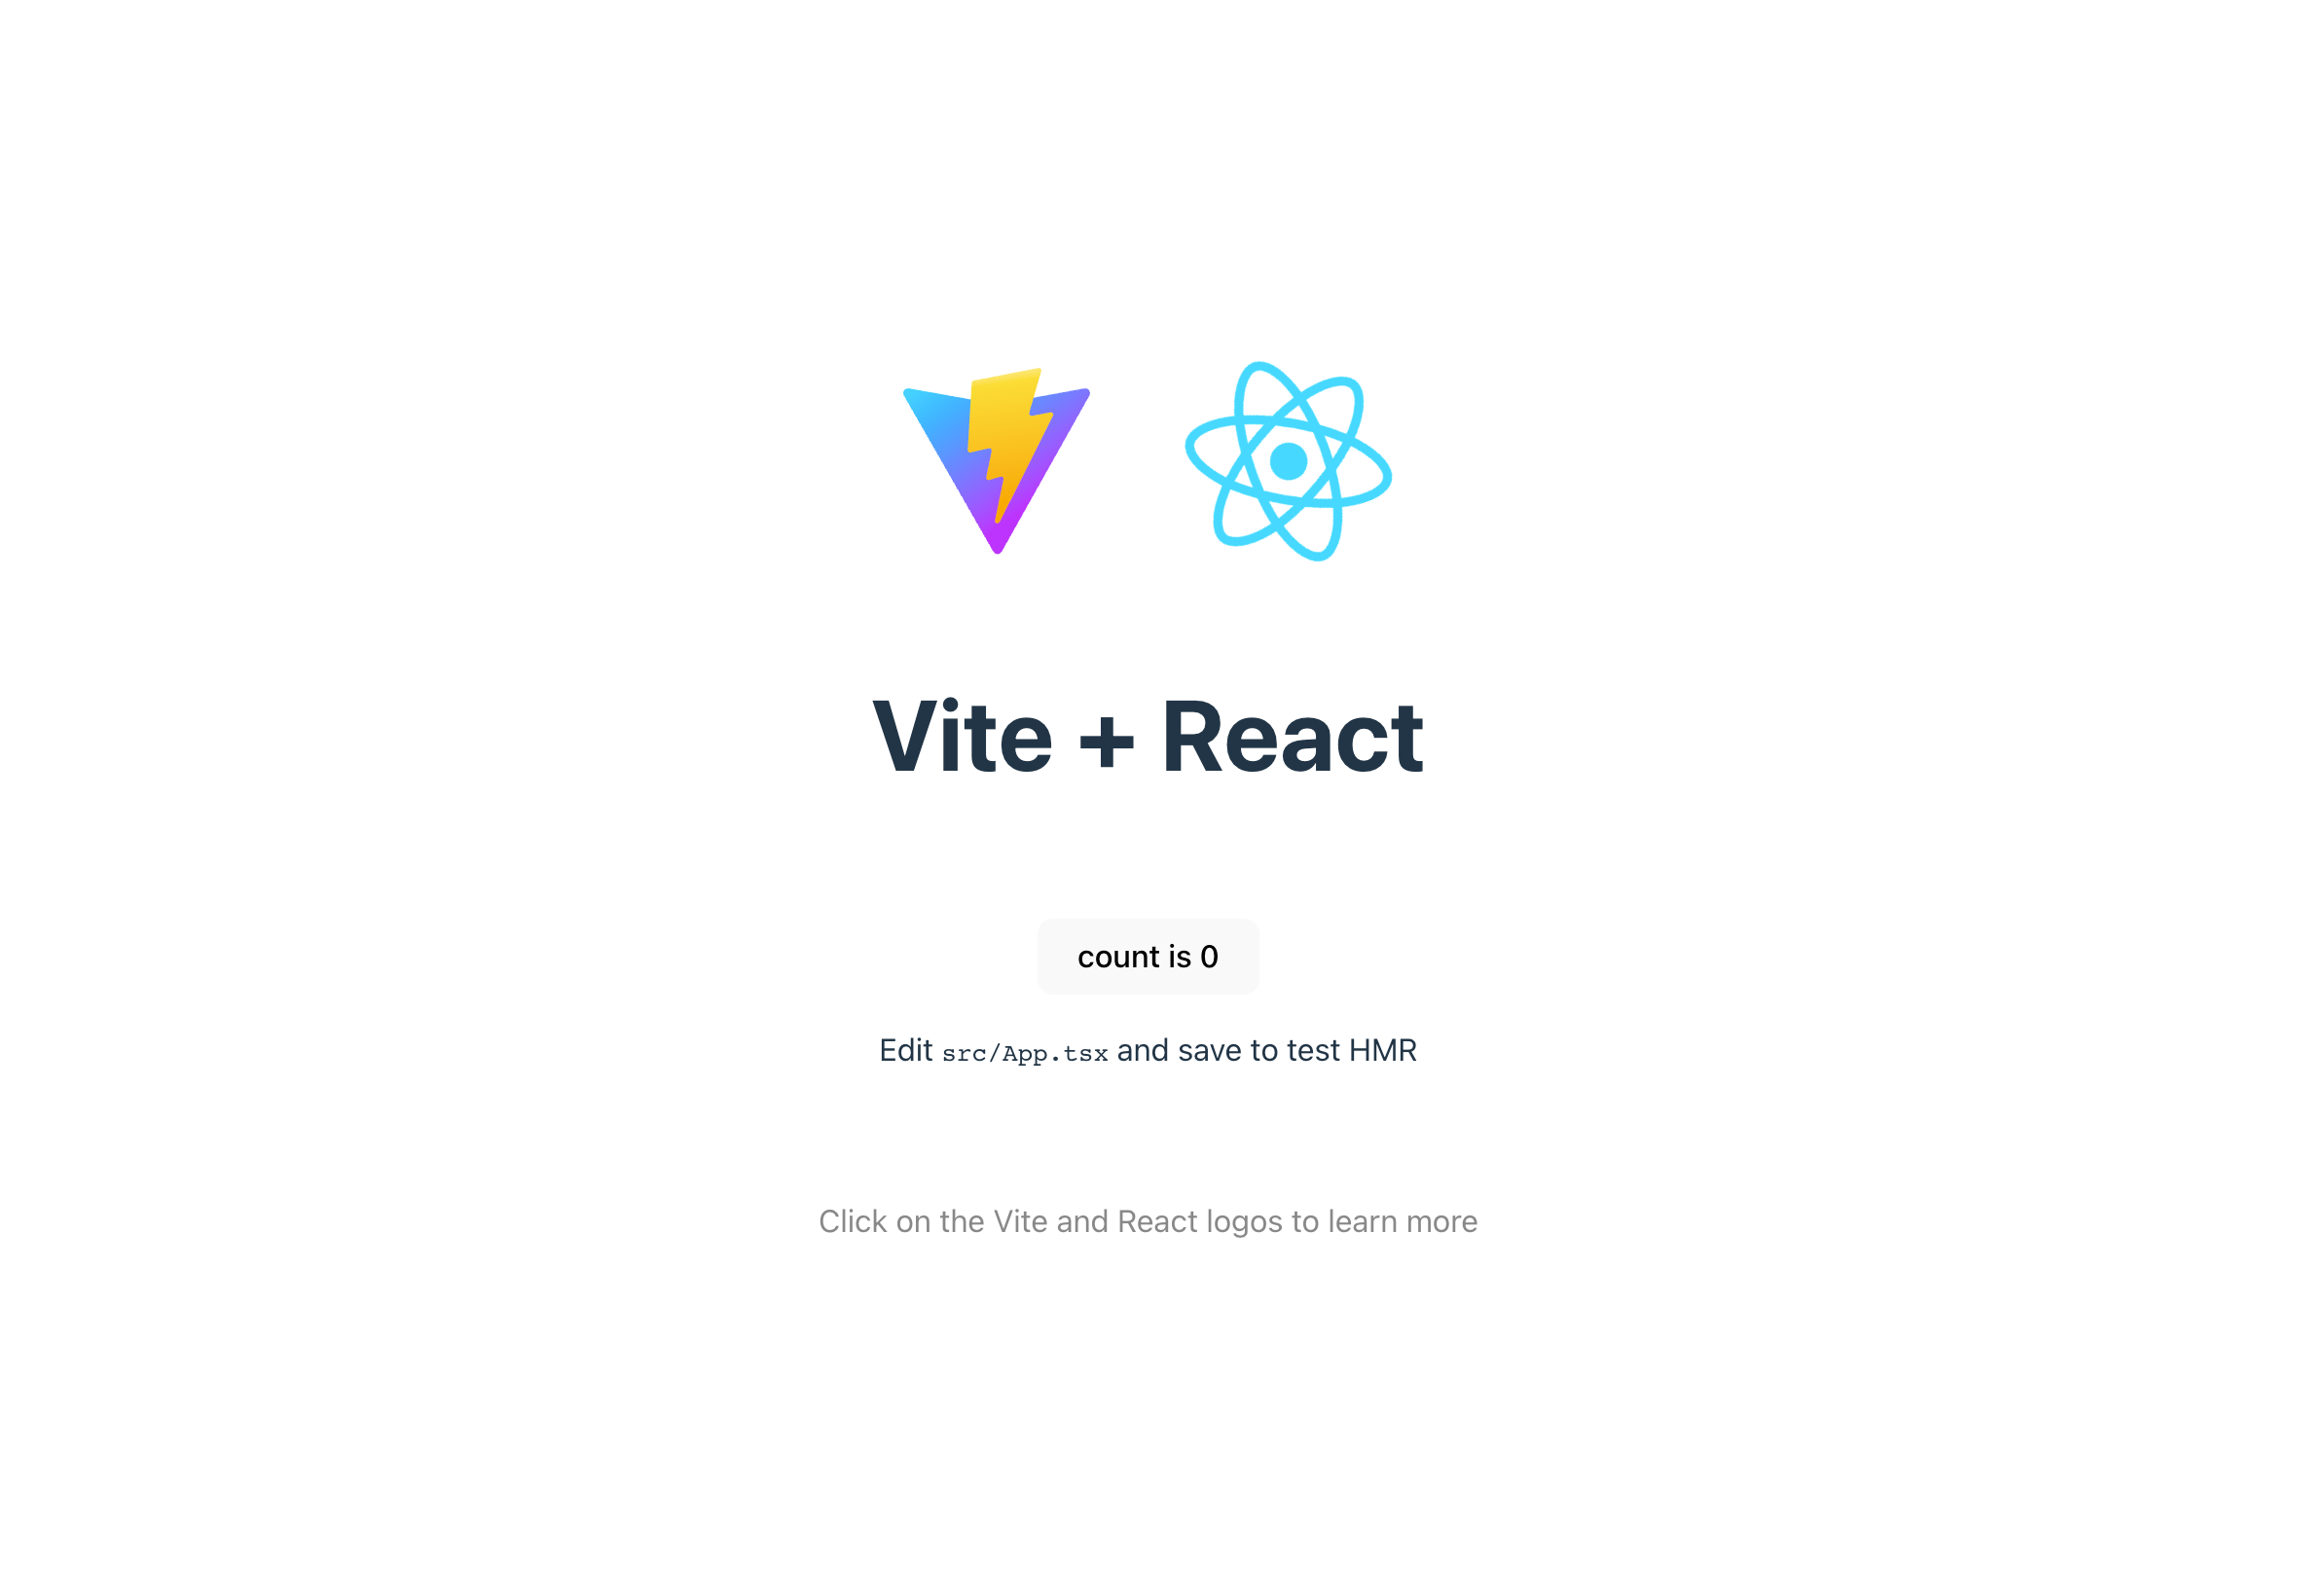 The starter Vite React app